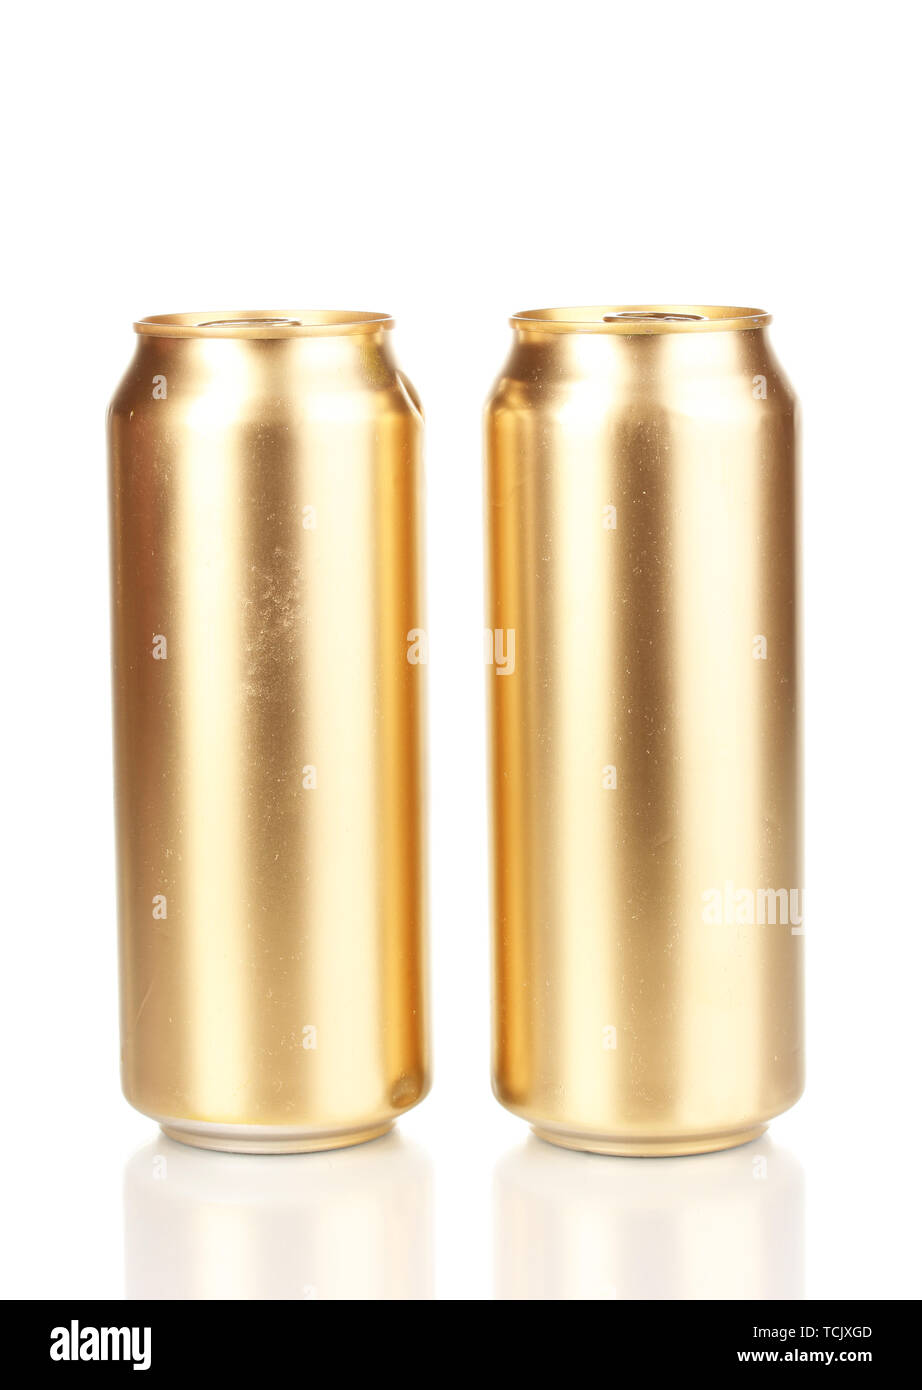 Golden cans